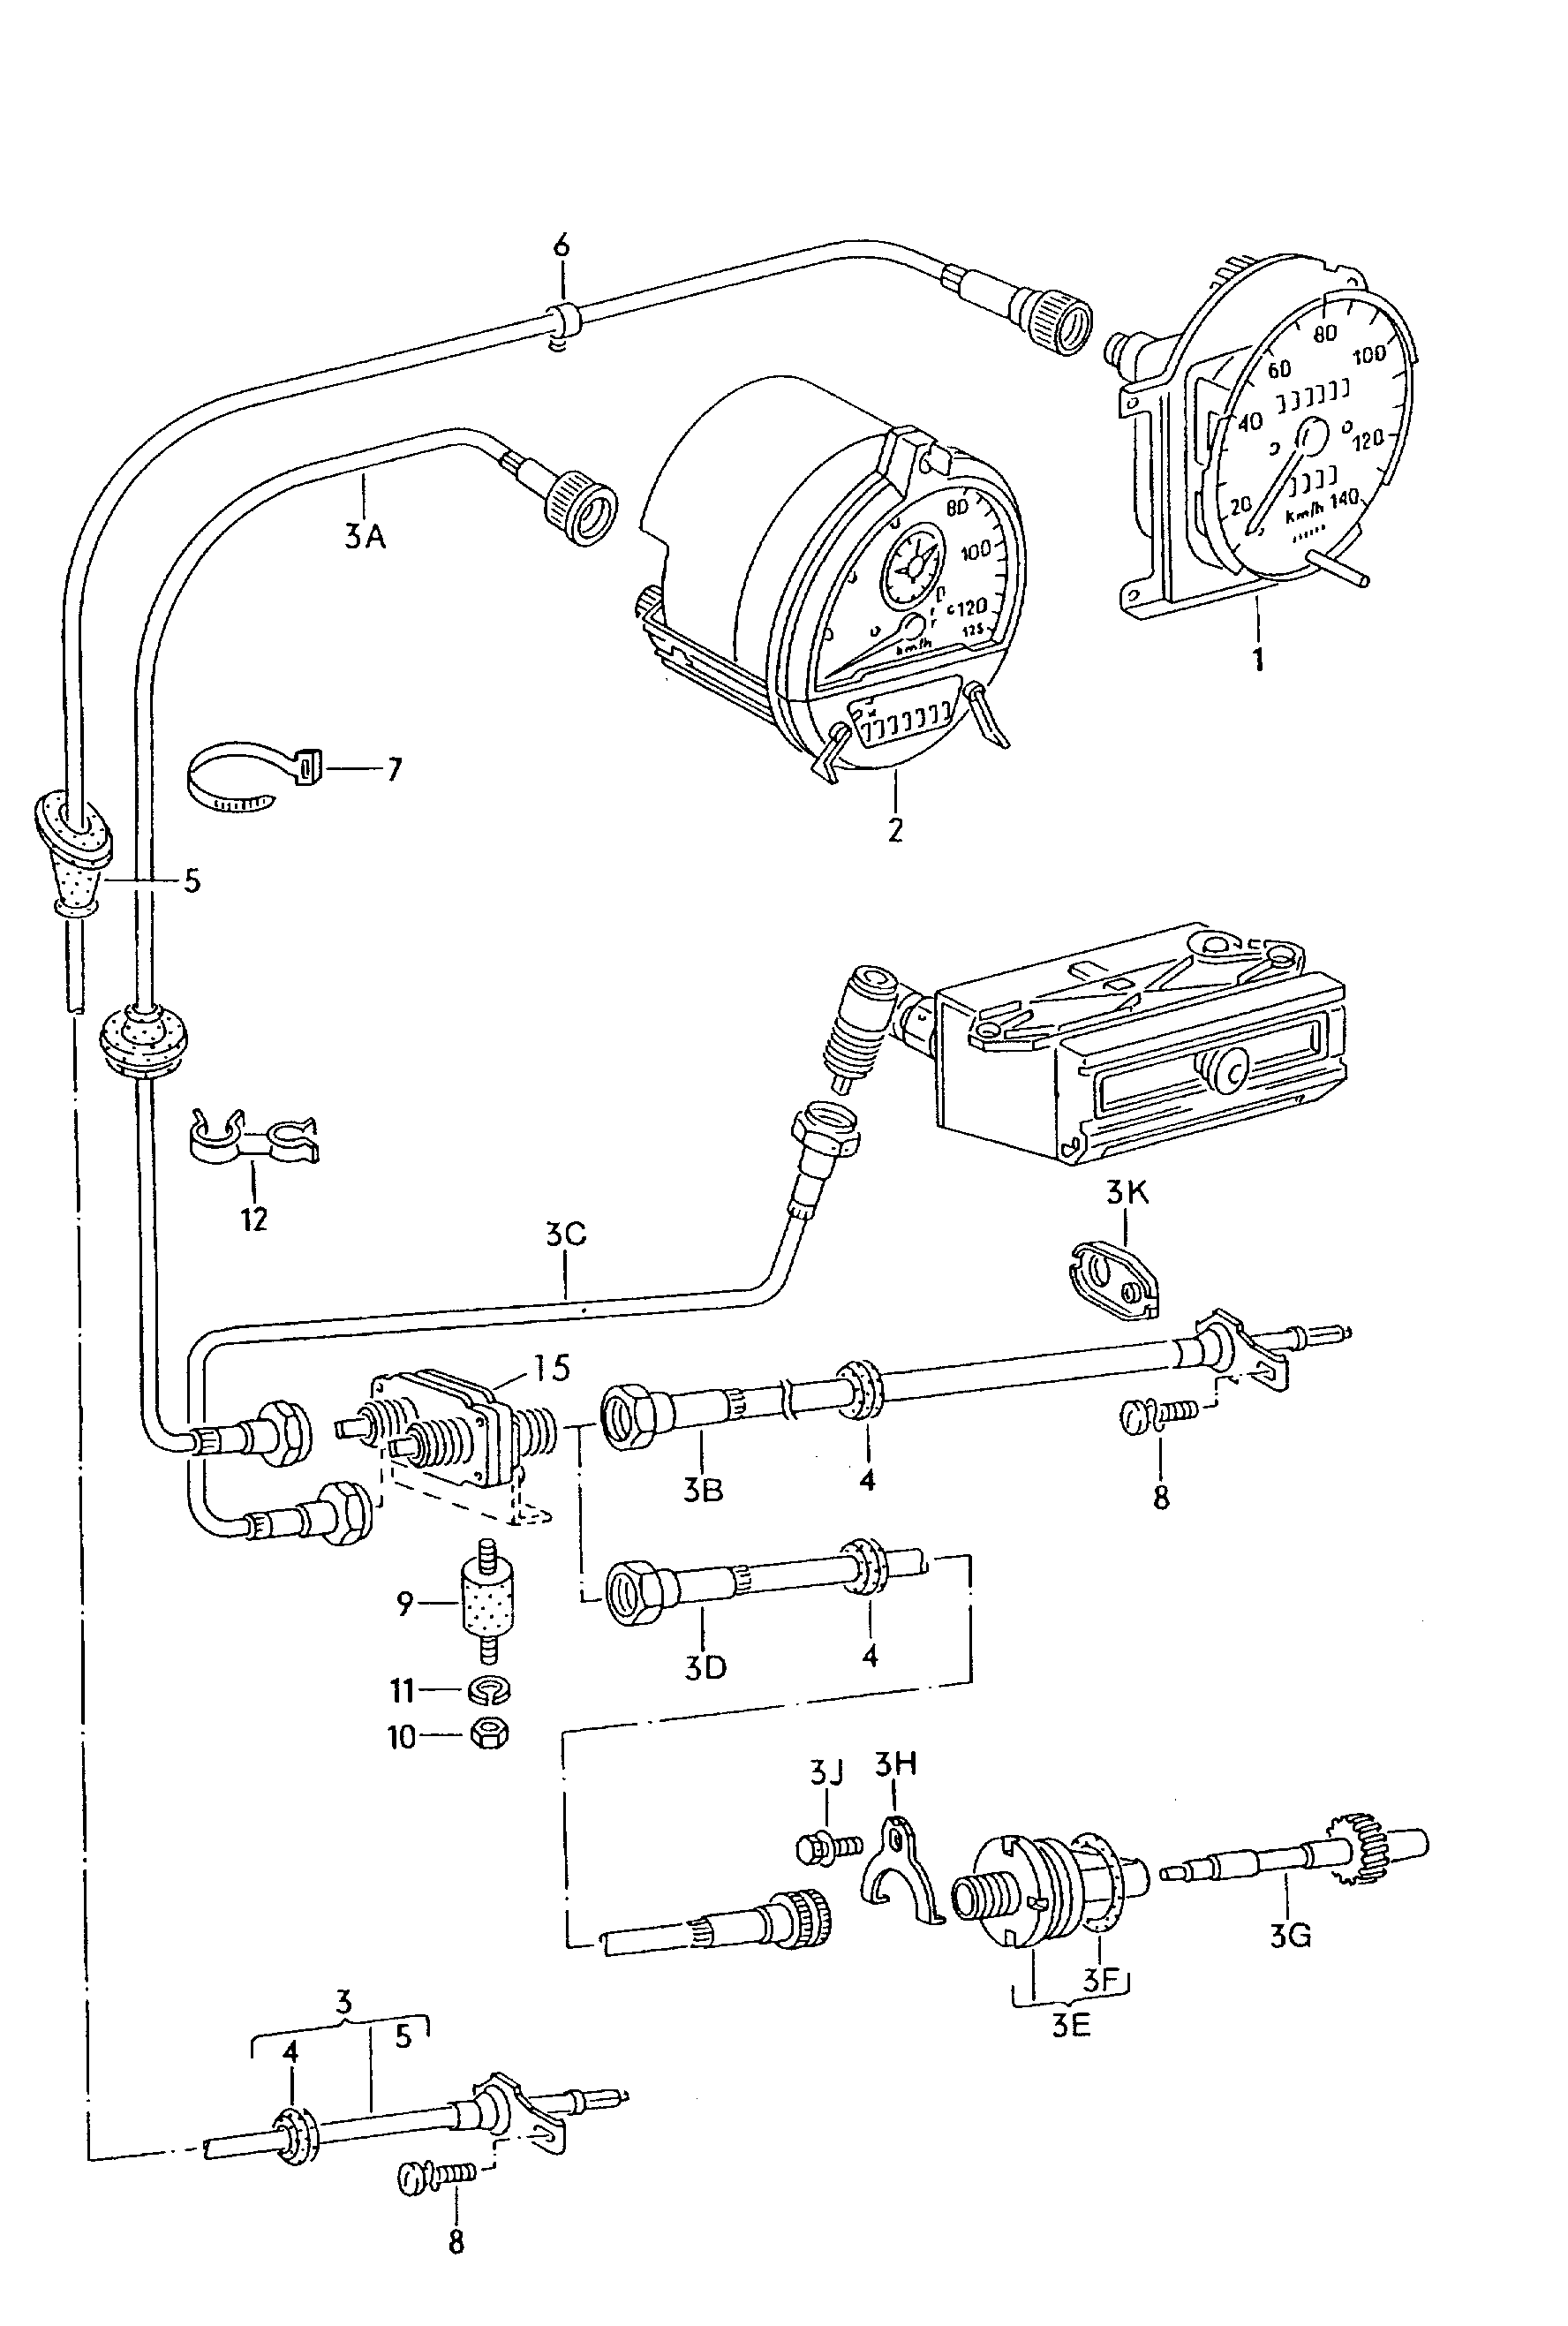 predkosciomierz(zlacze srubowe)tachograf(zlacze wkladane)  - LT, LT 4x4 - lt